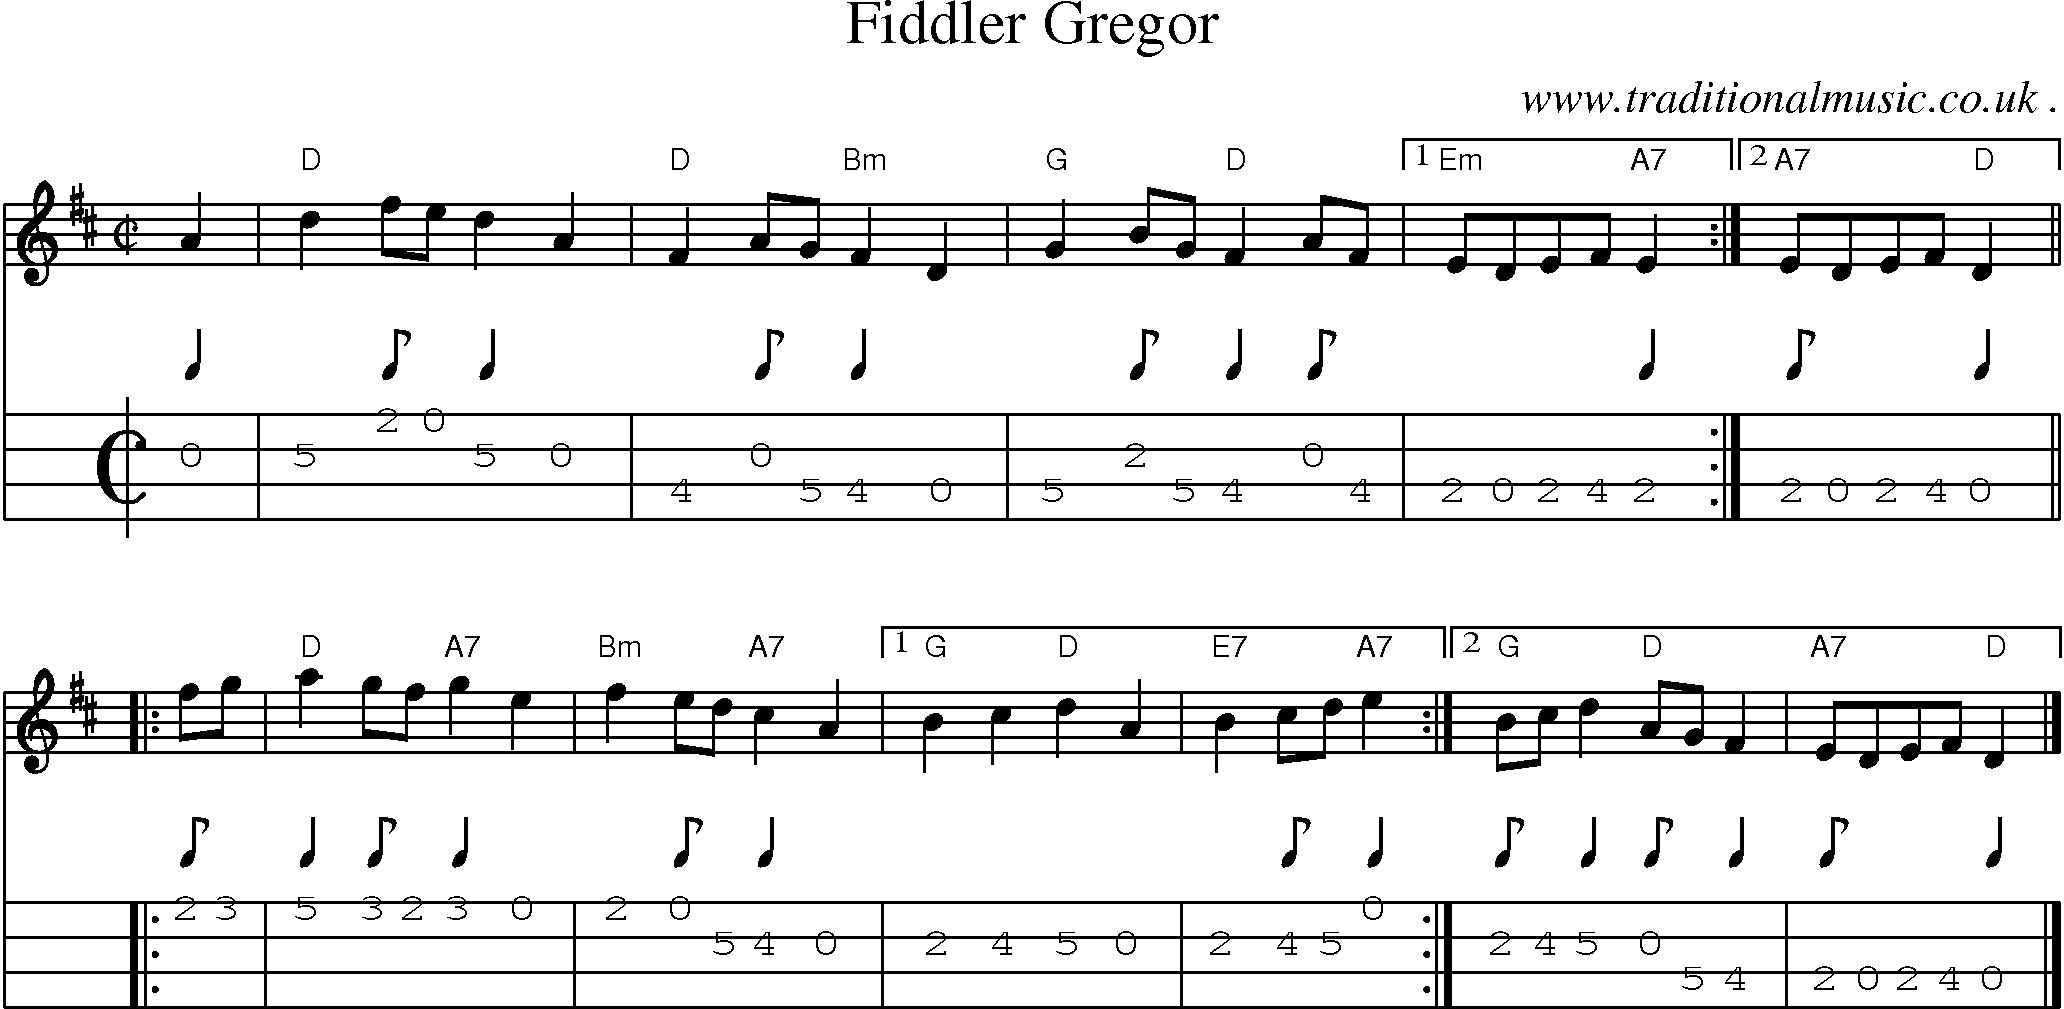 Sheet-music  score, Chords and Mandolin Tabs for Fiddler Gregor